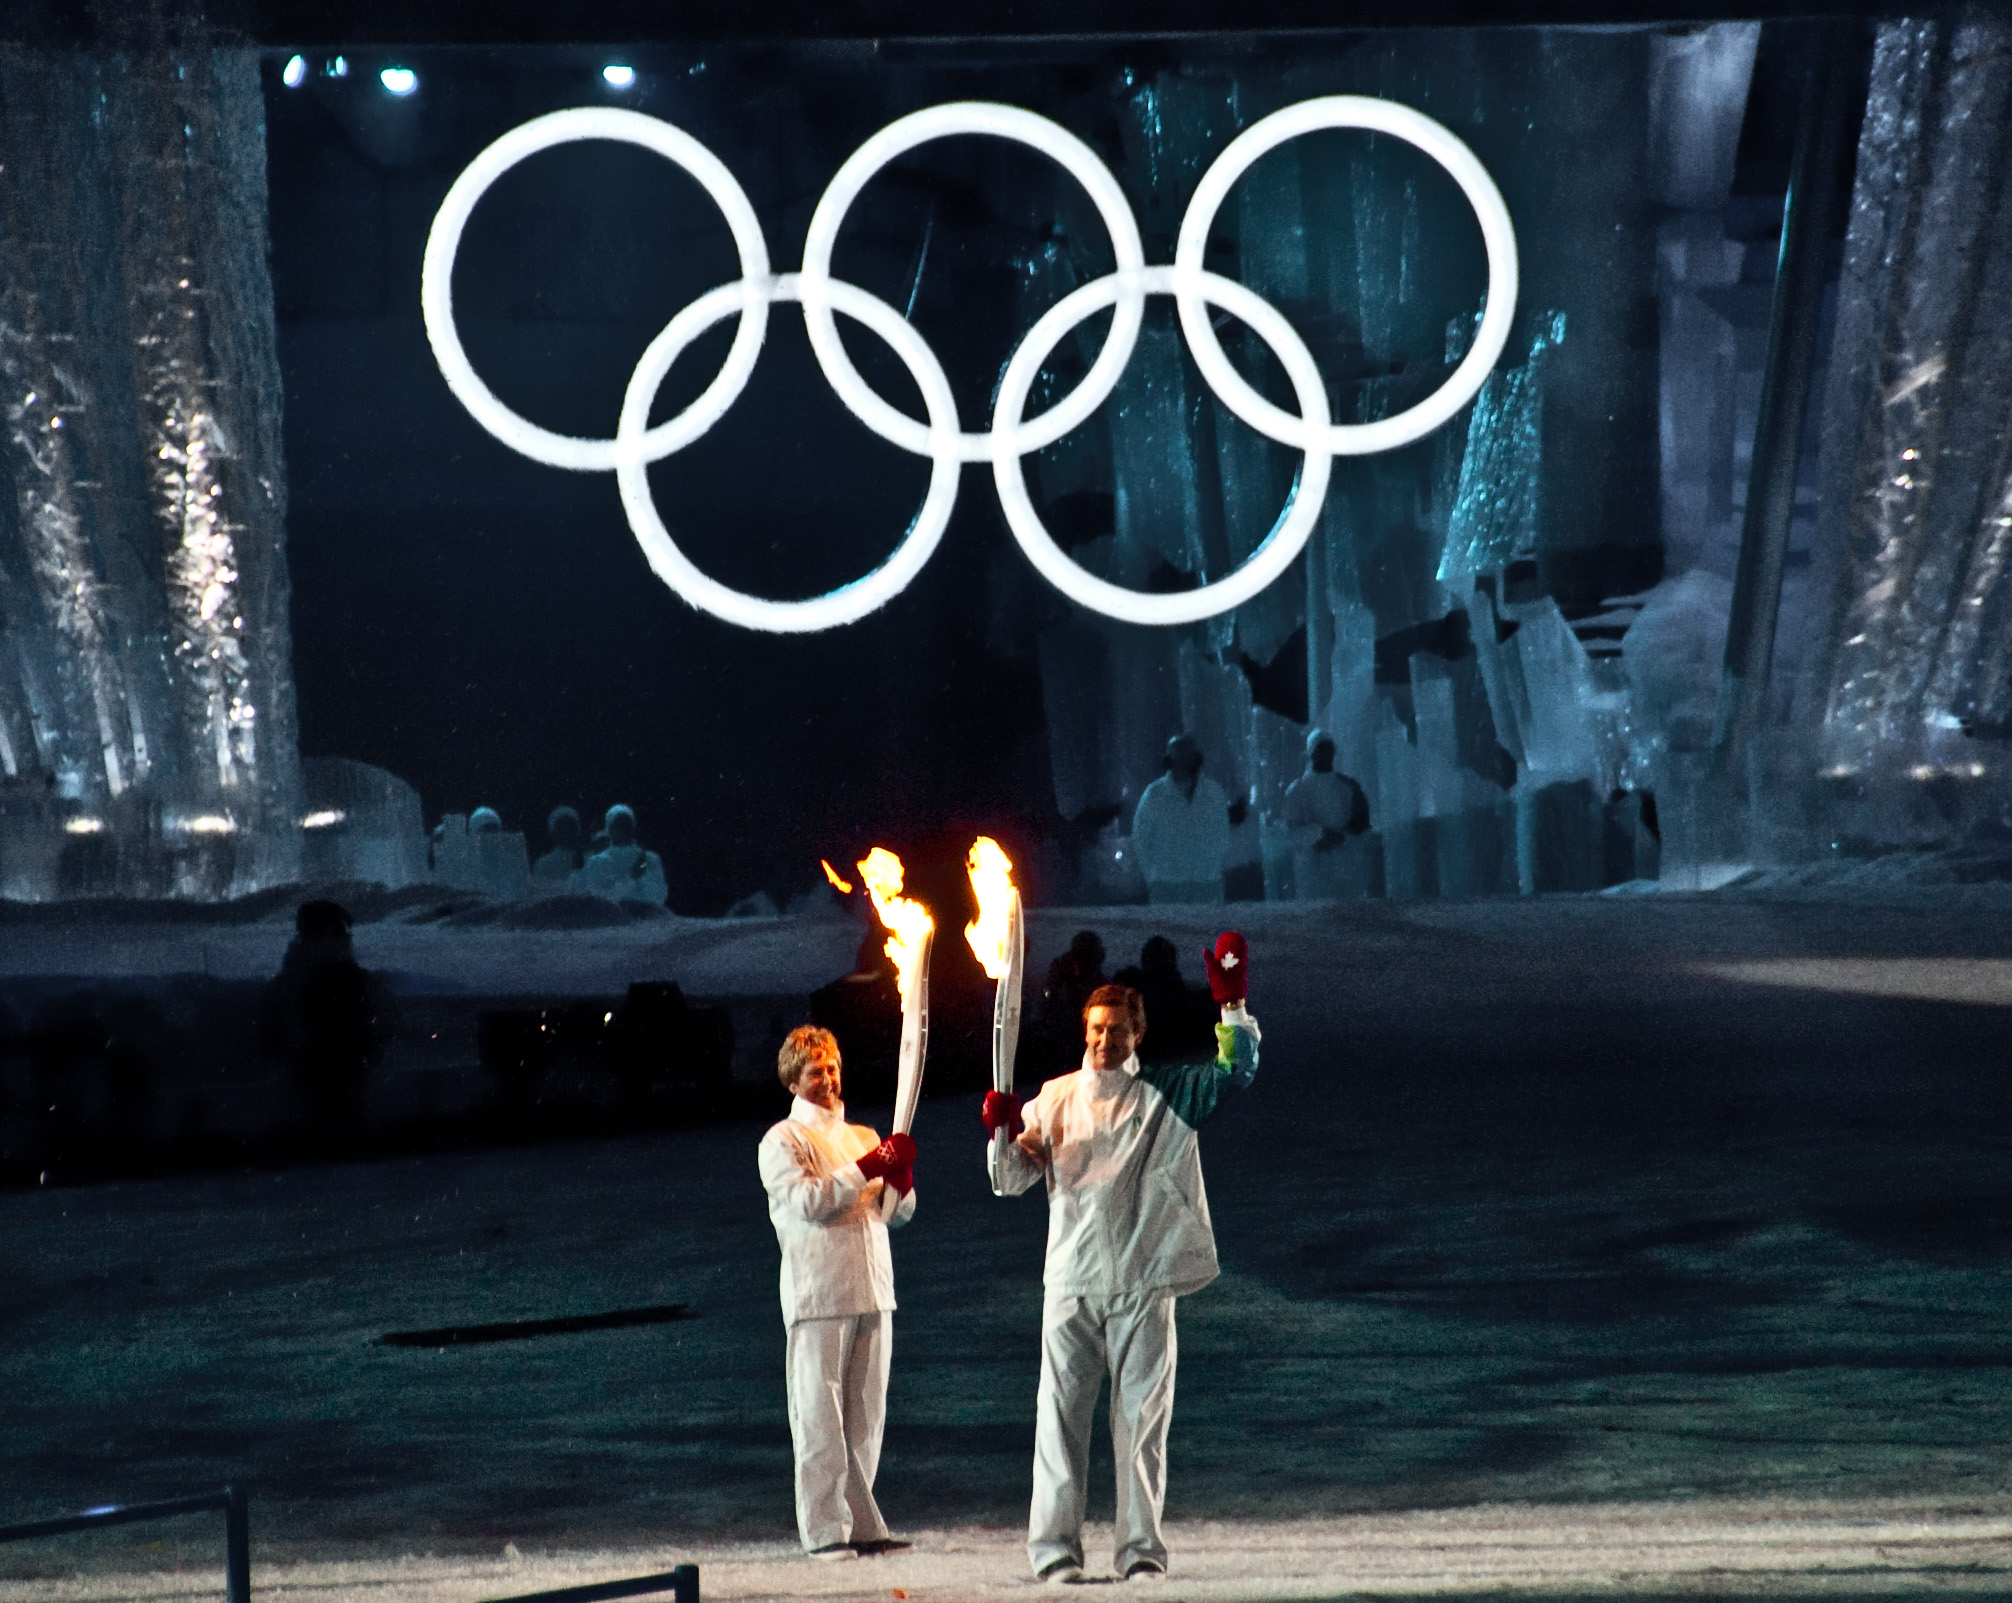 Олимпийский огонь современных игр зажигается. Олимпийский огонь Ванкувер 2010. Зажжение олимпийского огня в Сочи. Зажжение олимпийского огня Сидней. Факел олимпийского огня Олимпийских игр зажигается.